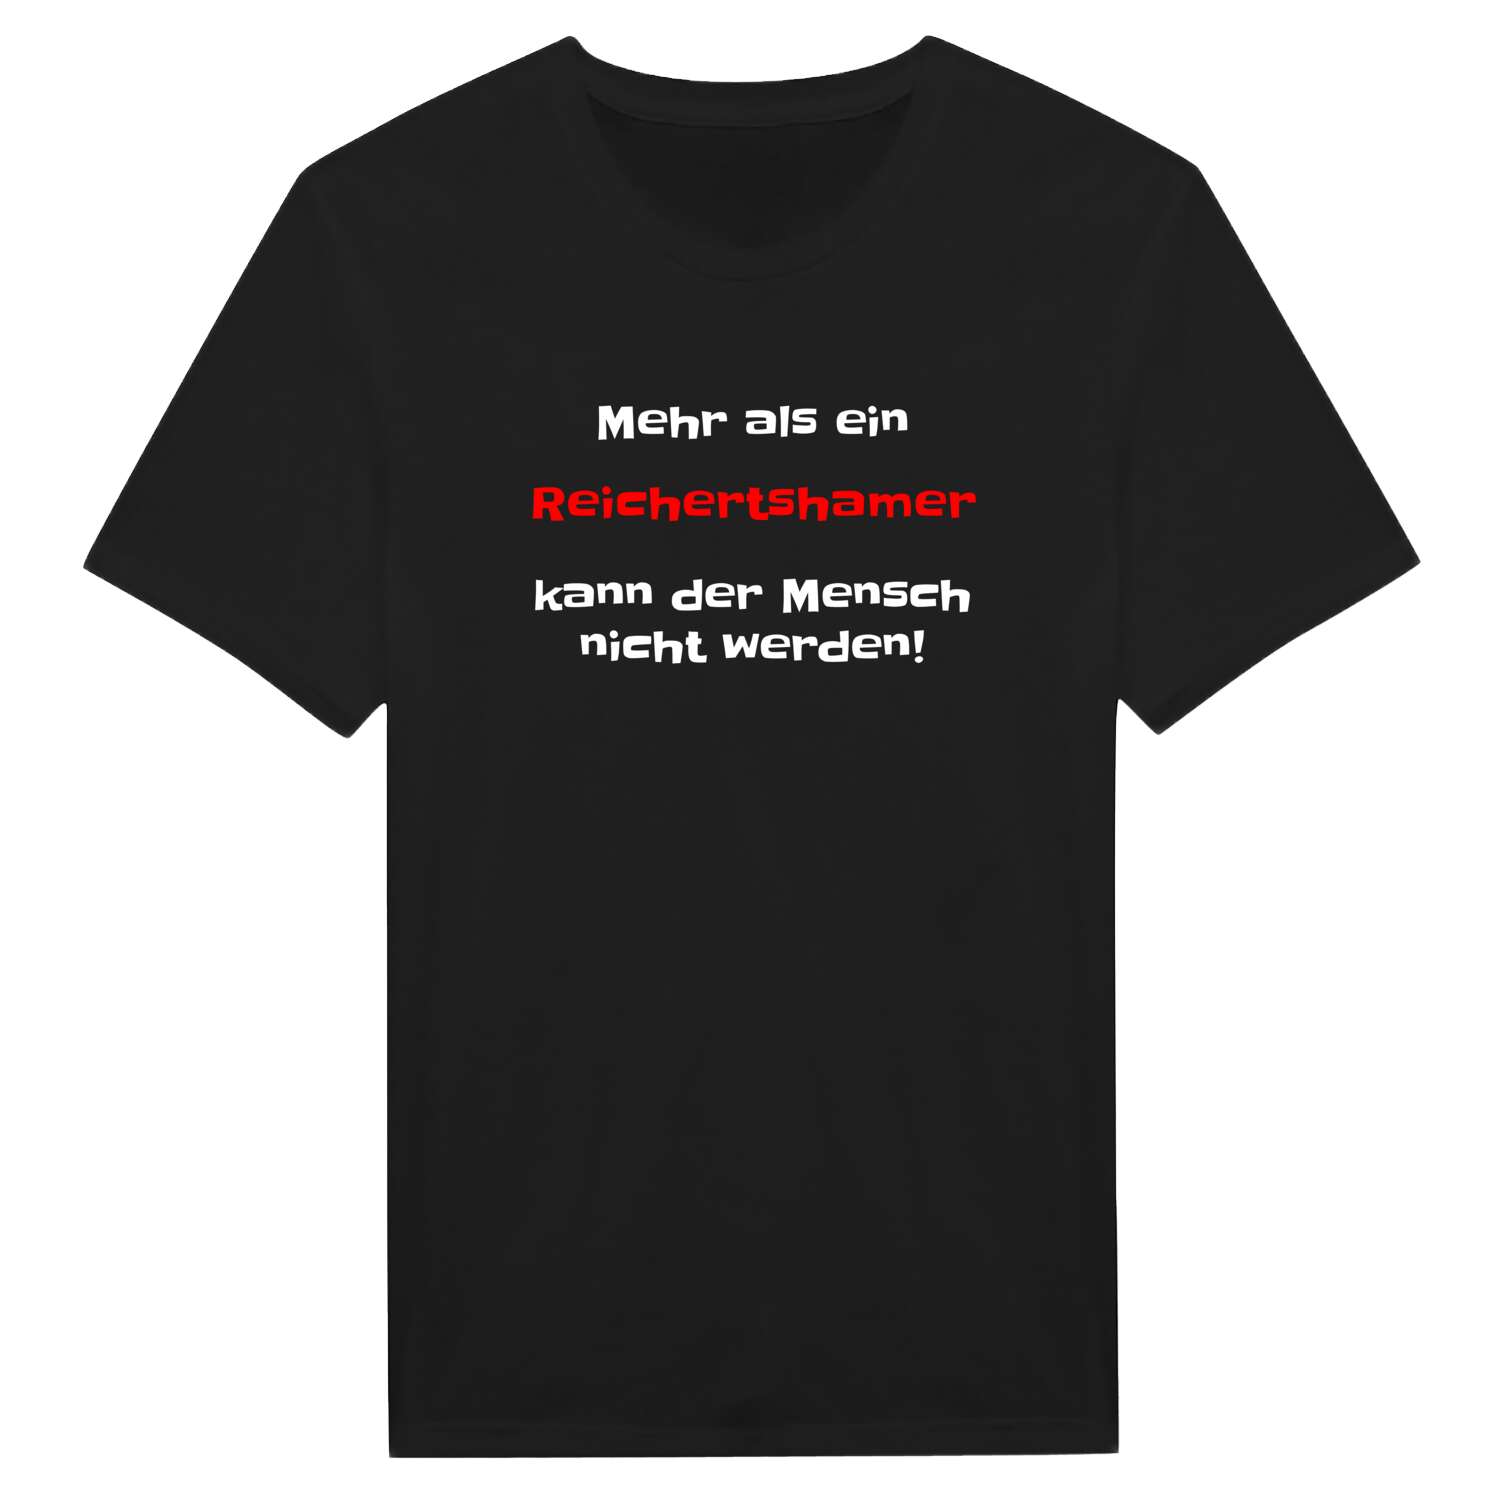 Reichertsham T-Shirt »Mehr als ein«